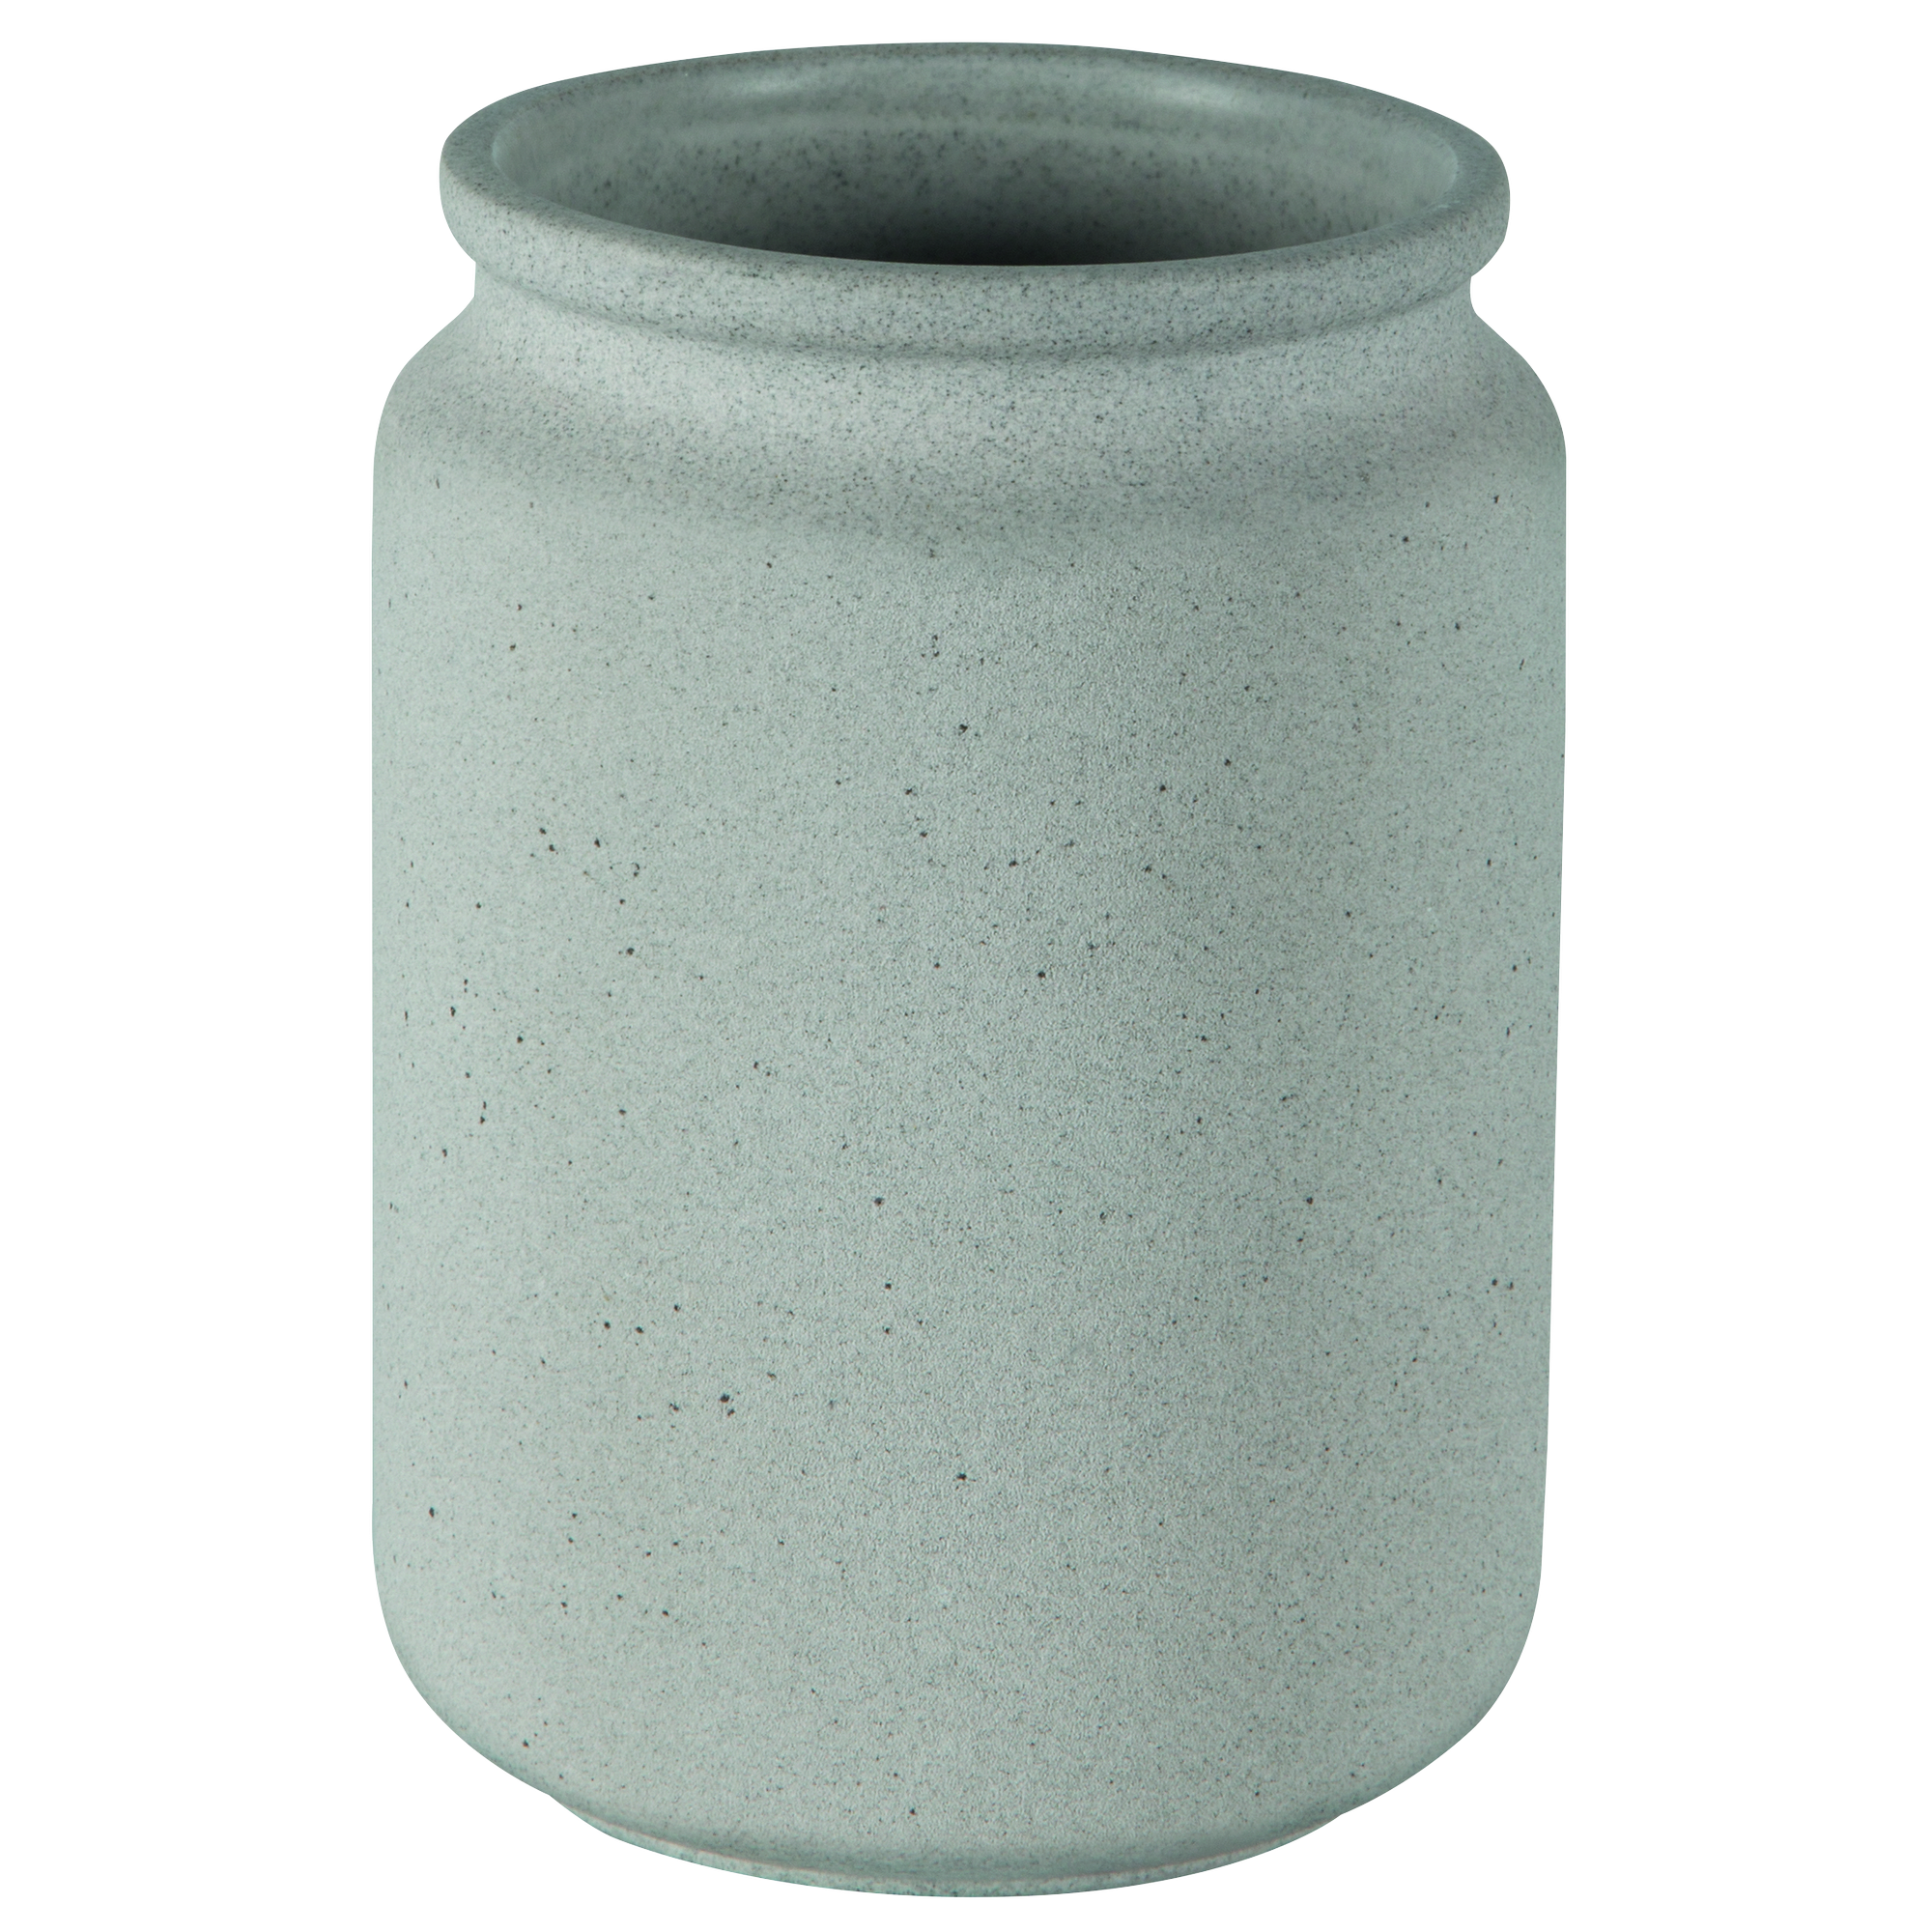 Zahnputzbecher "Cement" Grau + product picture